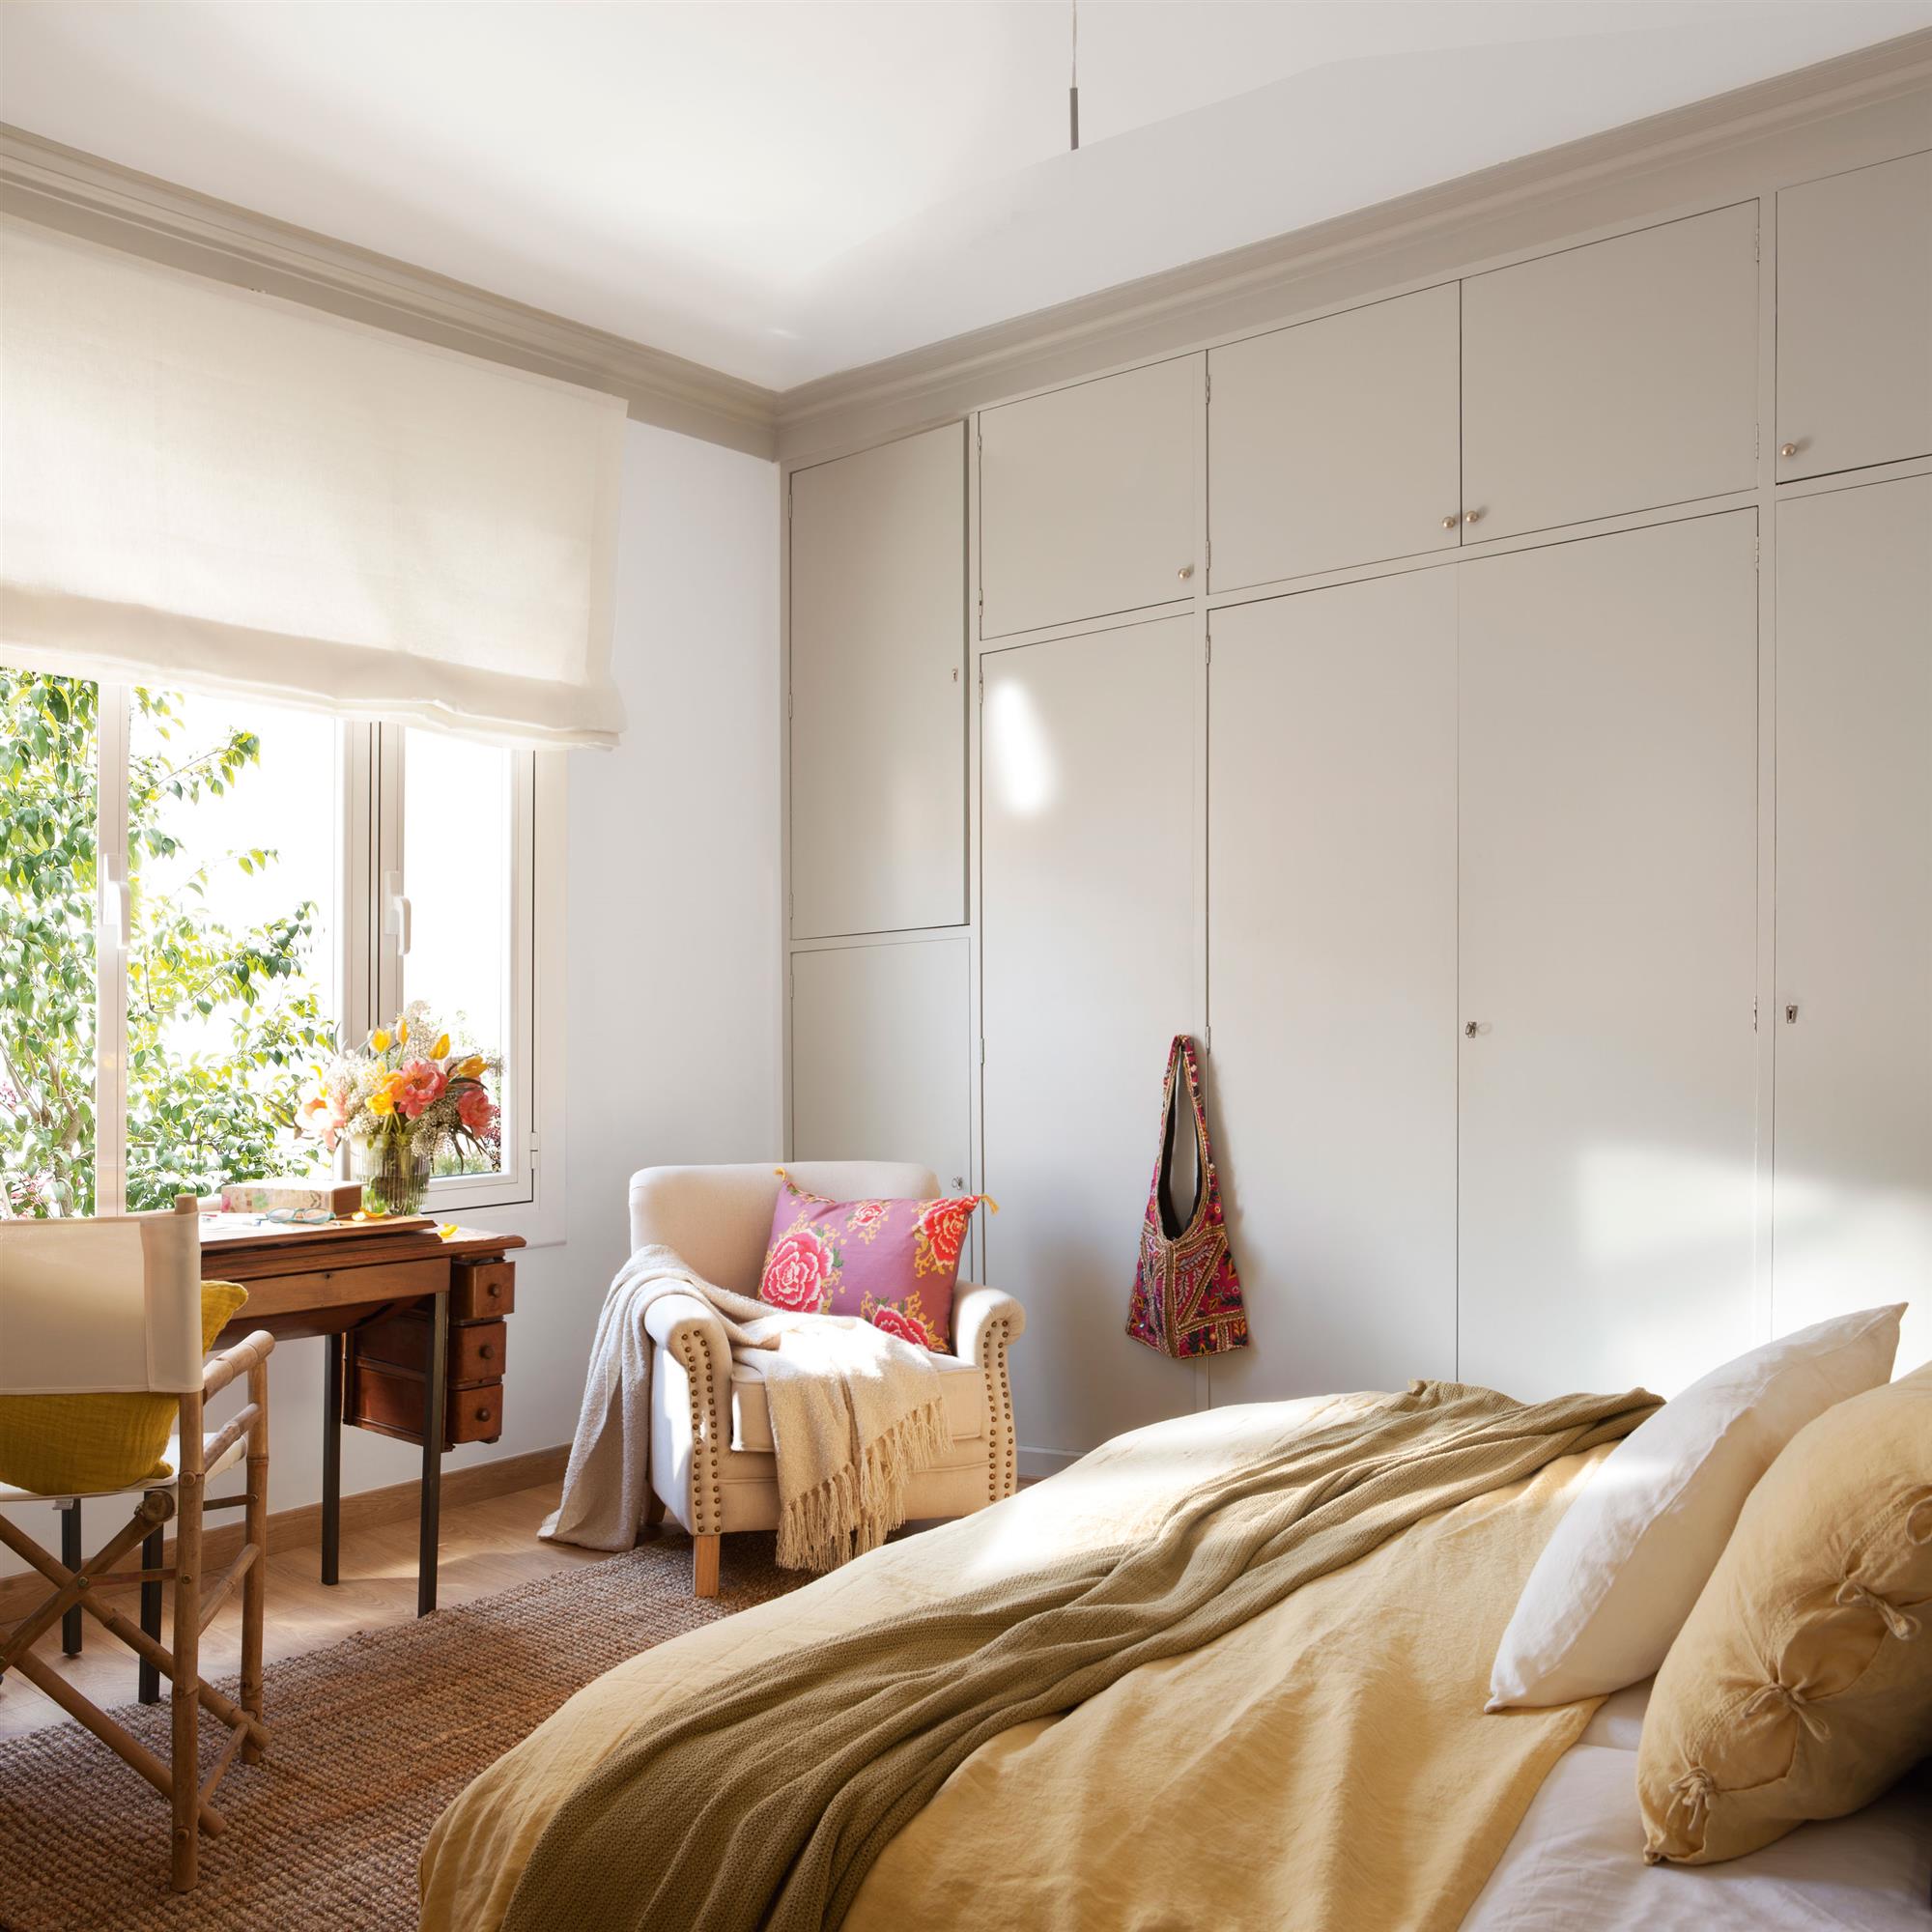 Dormitorio con armario empotrado con frentes lisos en color gris